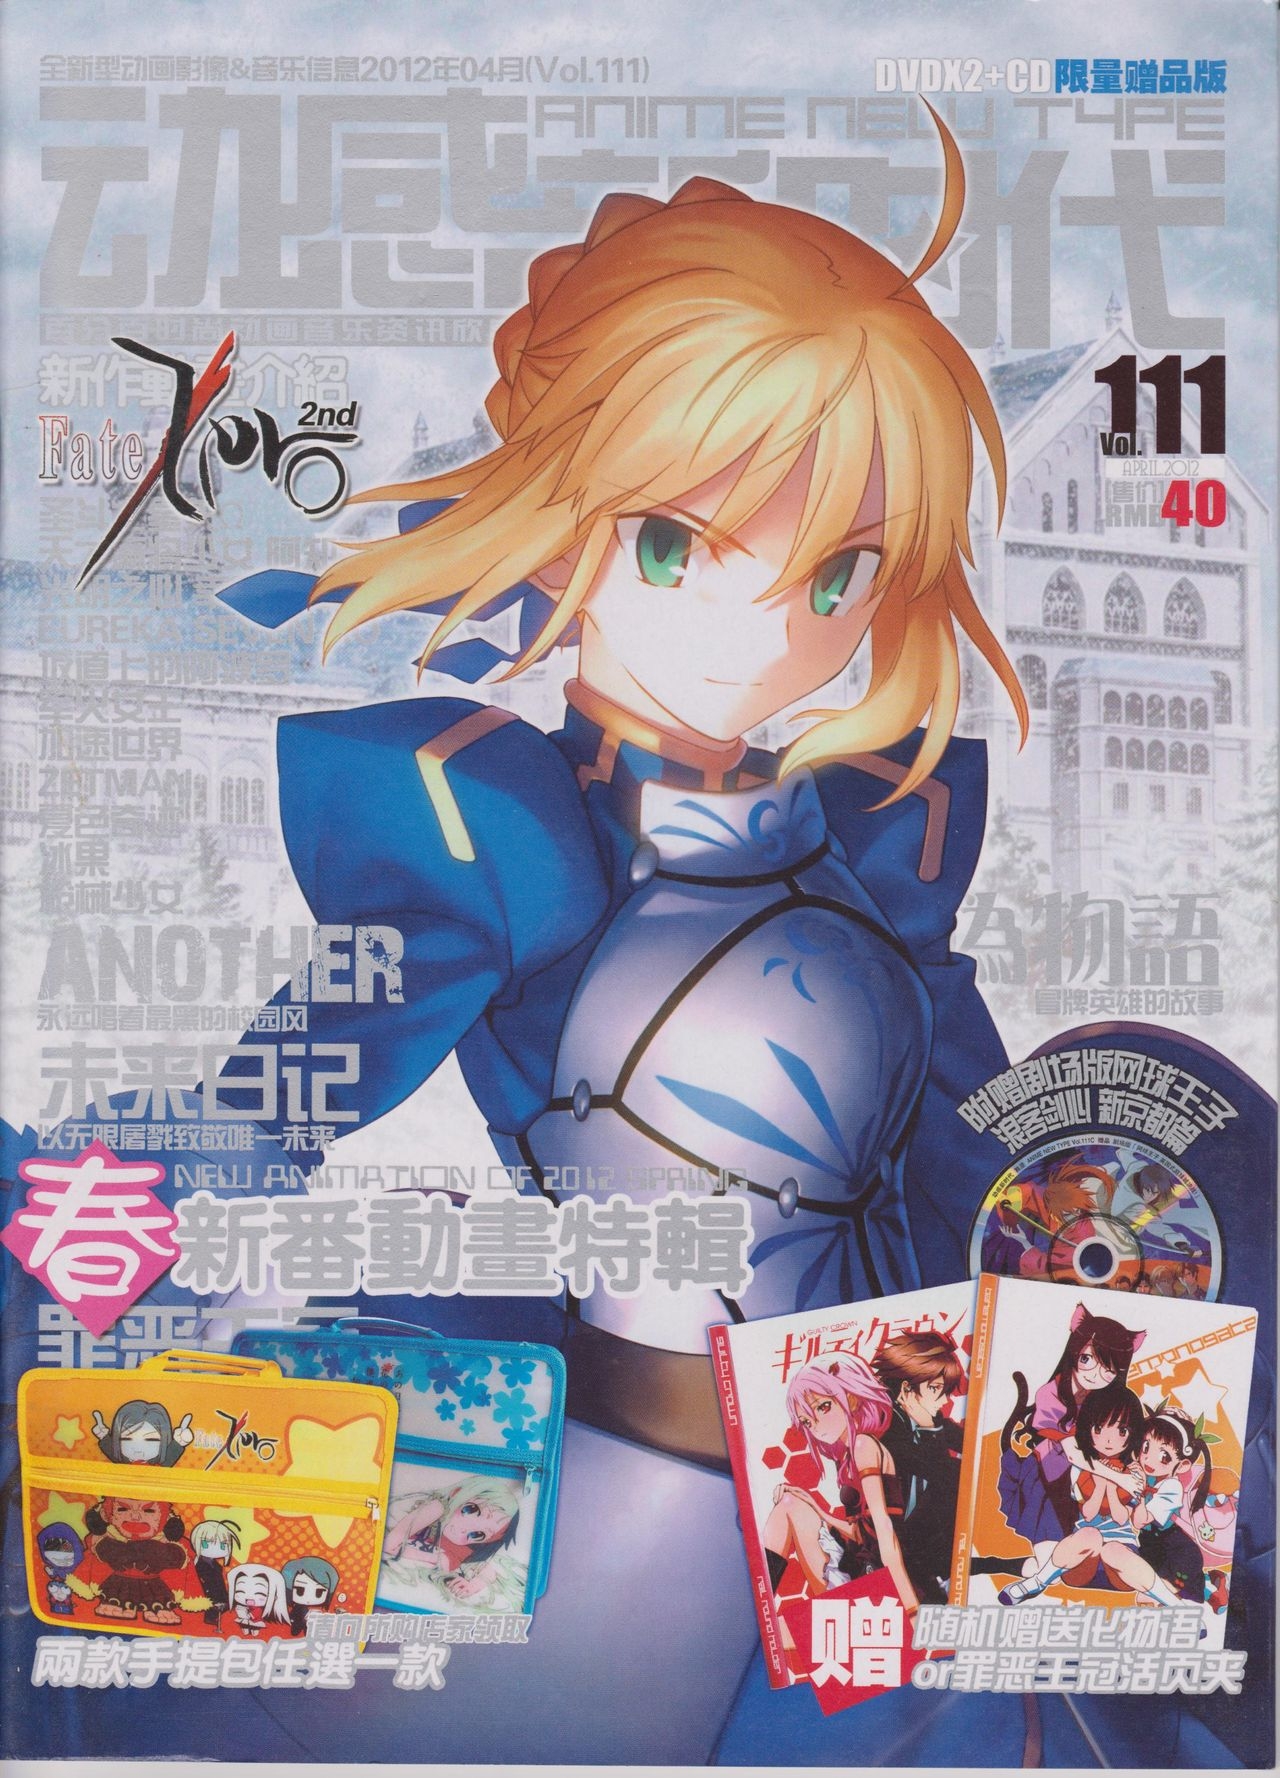 Anime New Type Vol.111 0